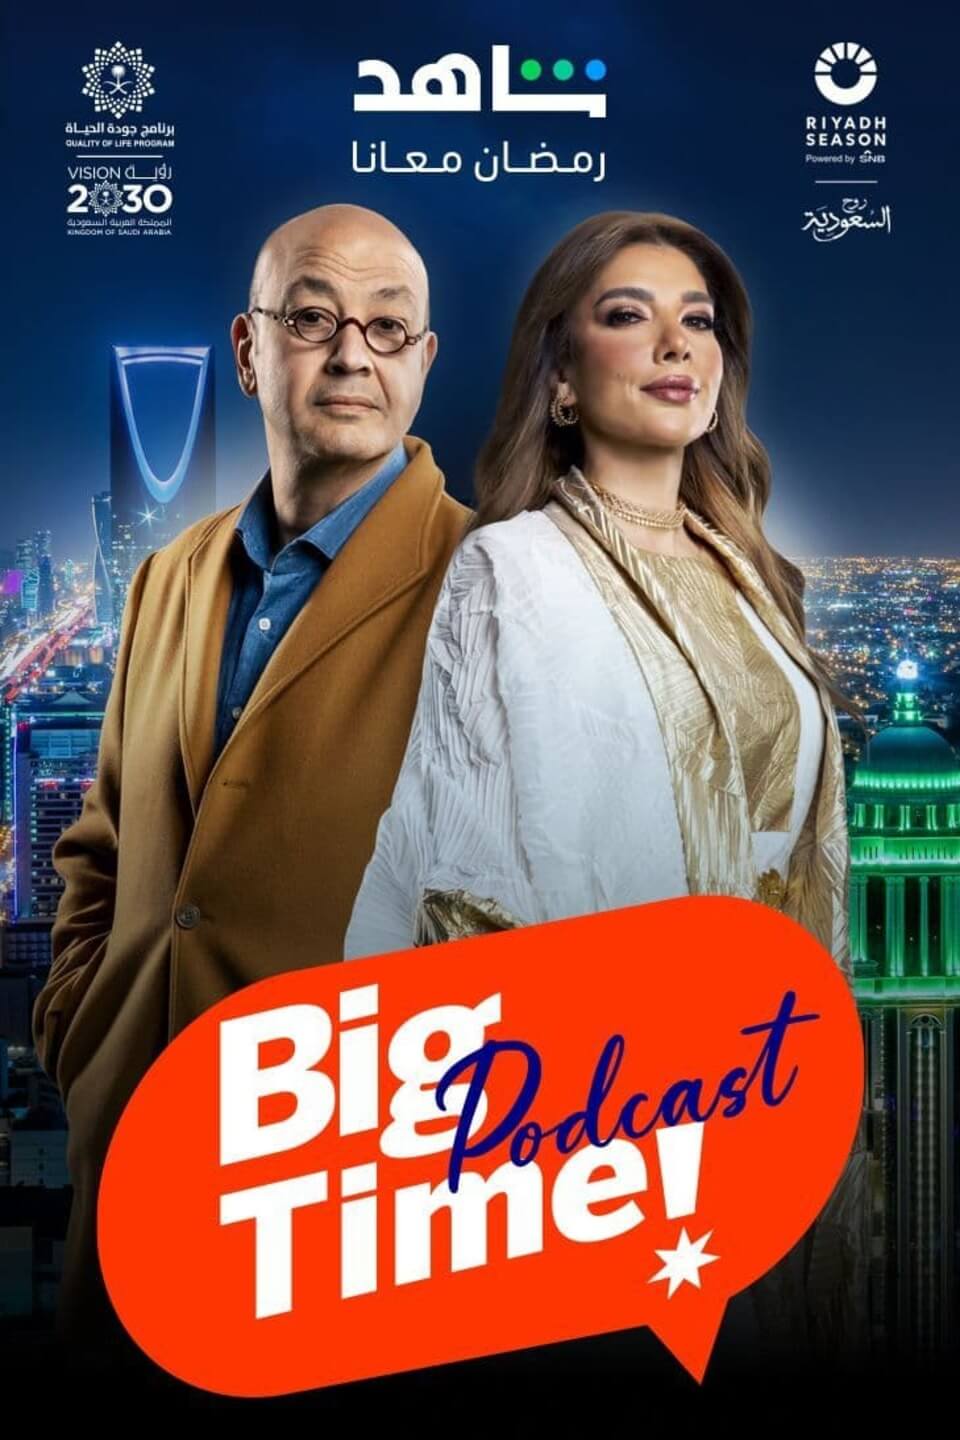 TV ratings for Big Time Podcast (بودكاست بيج تايم ) in Turkey. Shahid TV series